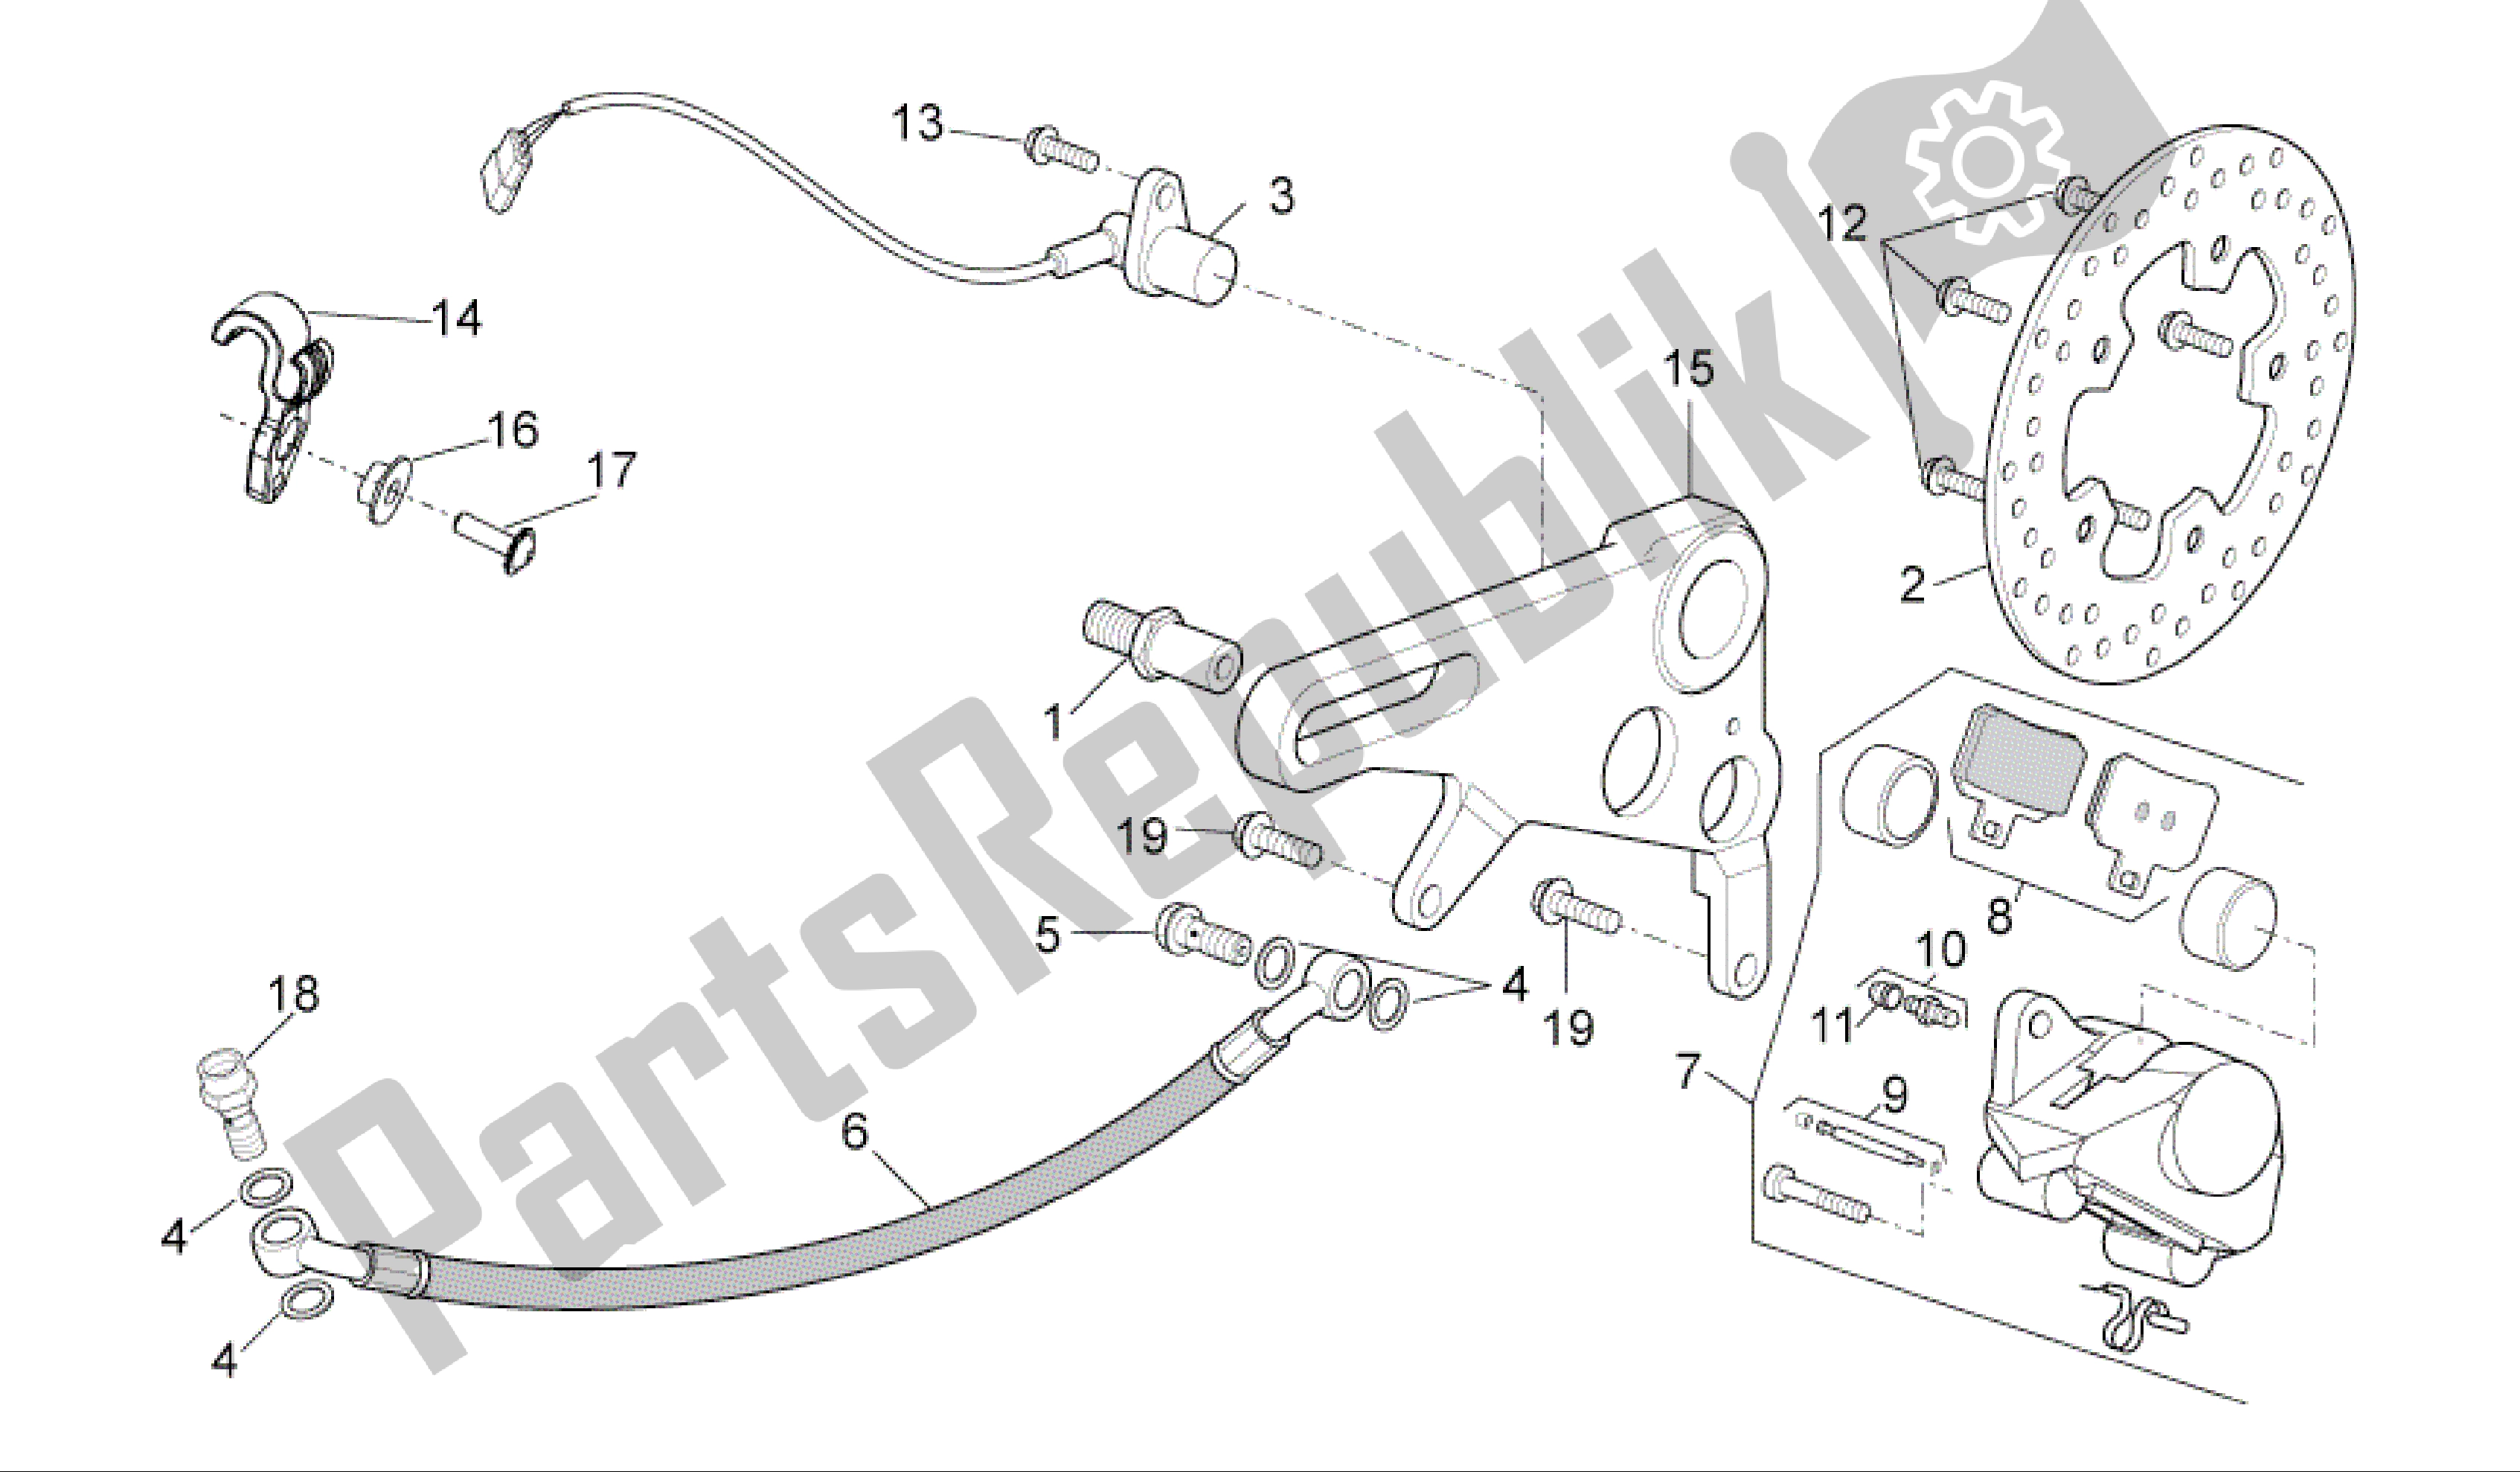 All parts for the Rear Brake Caliper of the Aprilia RSV4 R 3980 1000 2009 - 2010